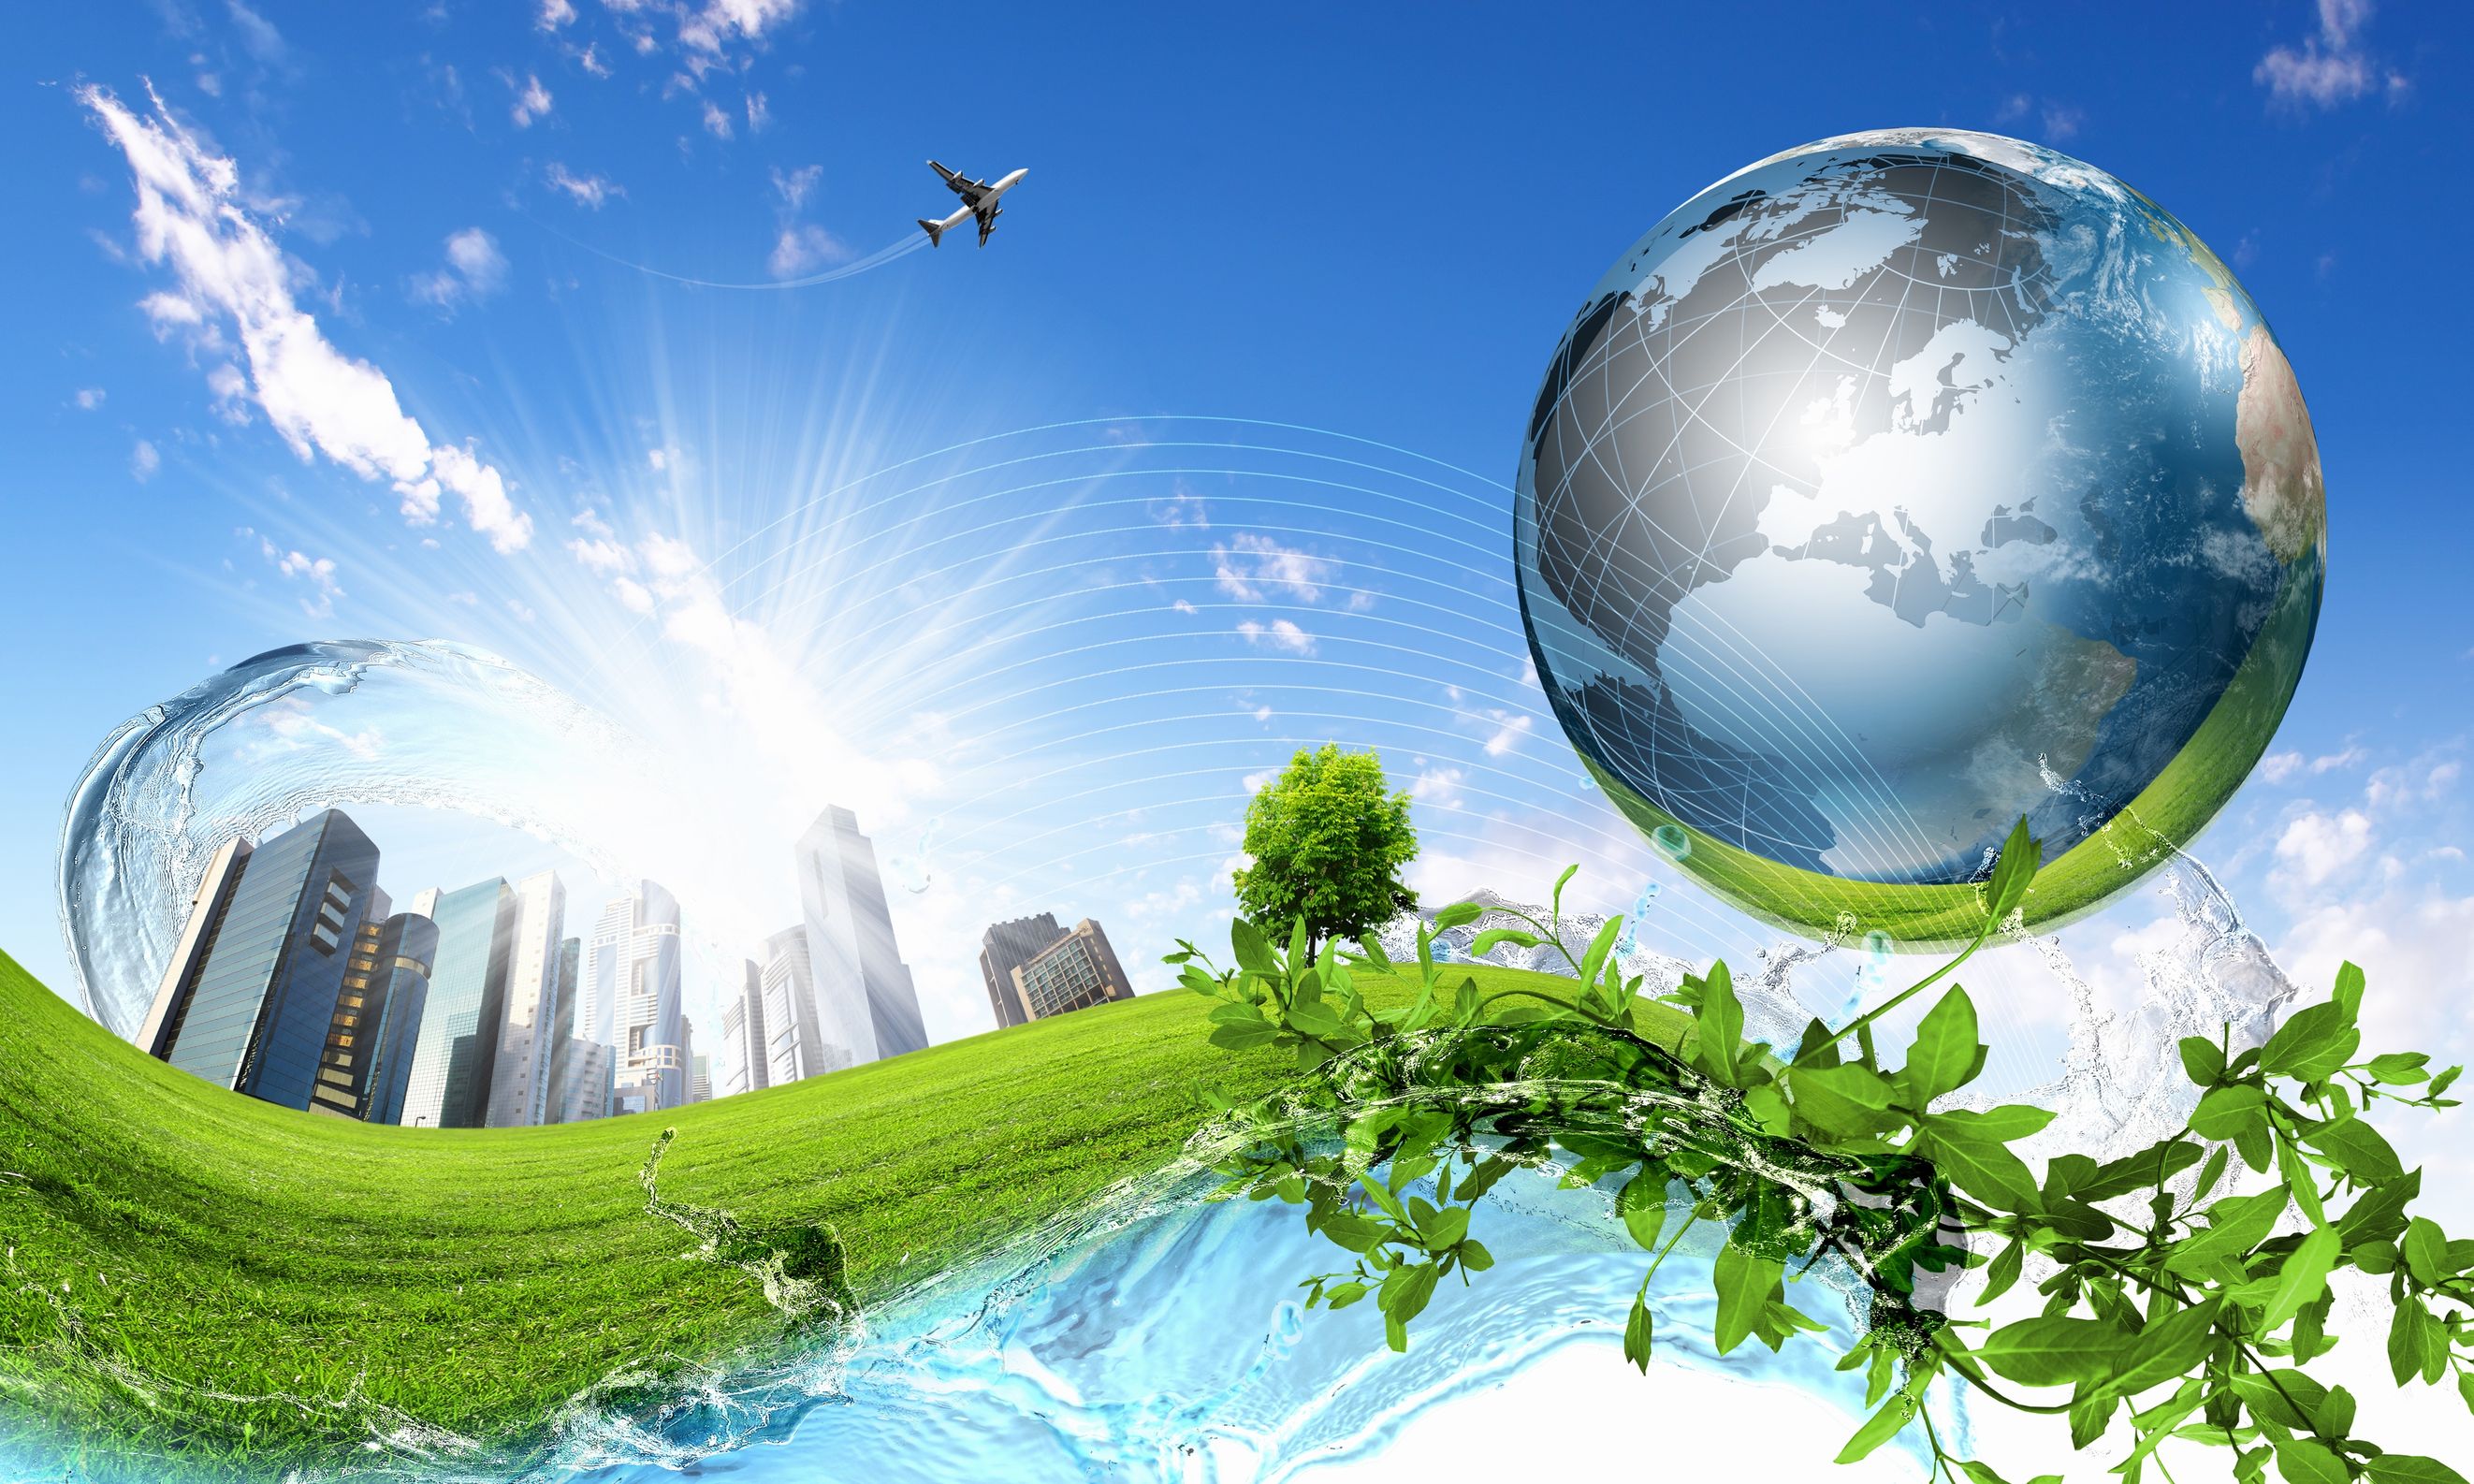 K&H fenntarthatósági index: fontos, de késhet a karbonsemlegesség